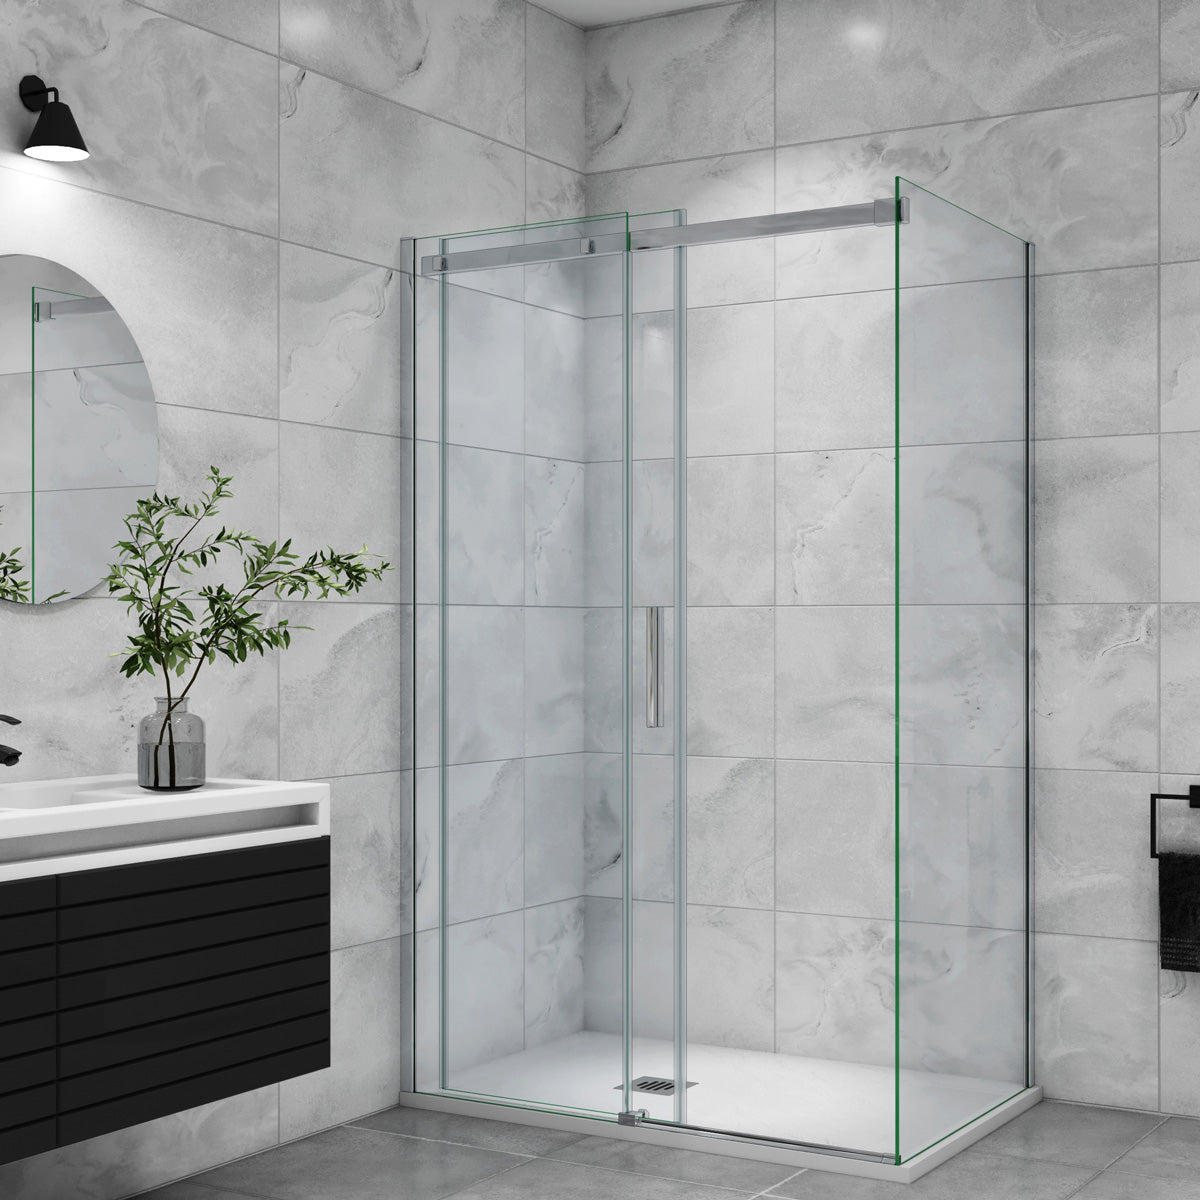 Duschtür+Seitenwand Schiebetür 160x100 cm Glasstärke 6mm Dusche Duschabtrennung Duschkabine